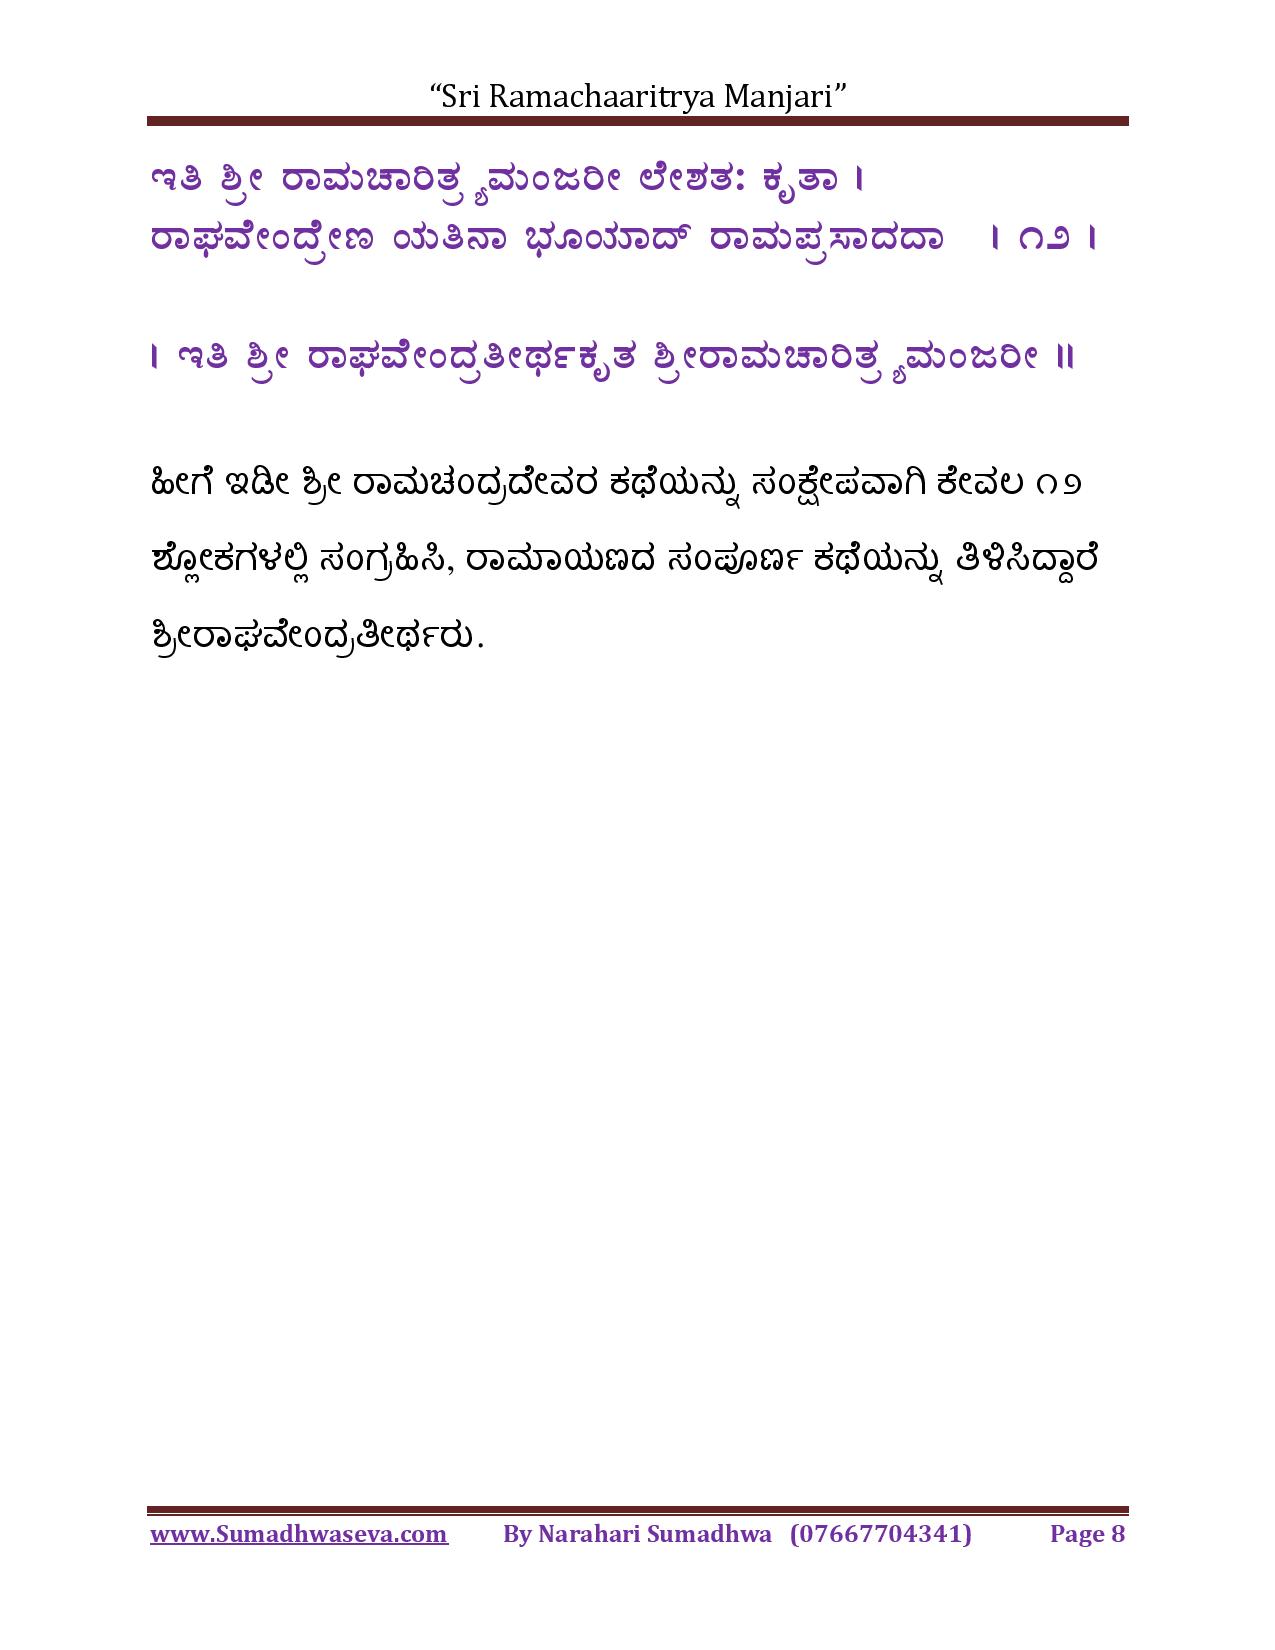 Ramacharitya-Manjari-Kannada-page-008